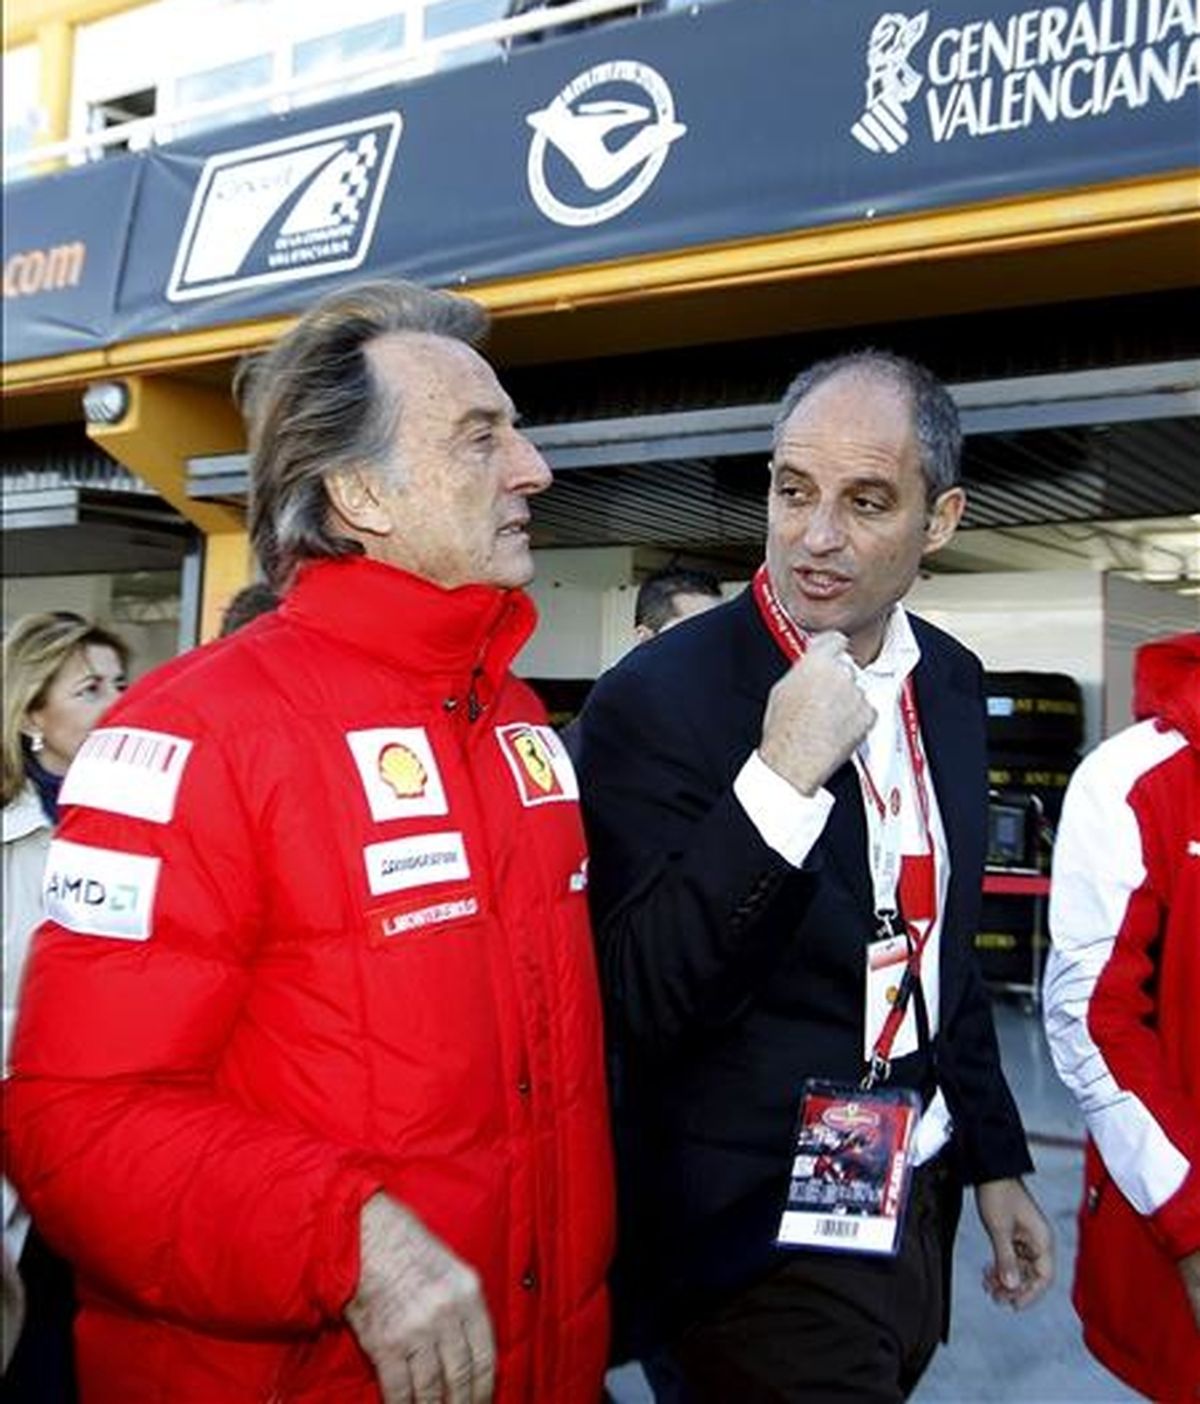 El presidente de la escudería Ferrari, Luca Cordero de Montezemolo (i) y el presidente de la Generalitat, Francisco Camps (d), pasean por boxes durante la exhibición que la escudería italiana ha realizado en el circuito valenciano de Cheste tras las Finales Mundiales 2010. EFE